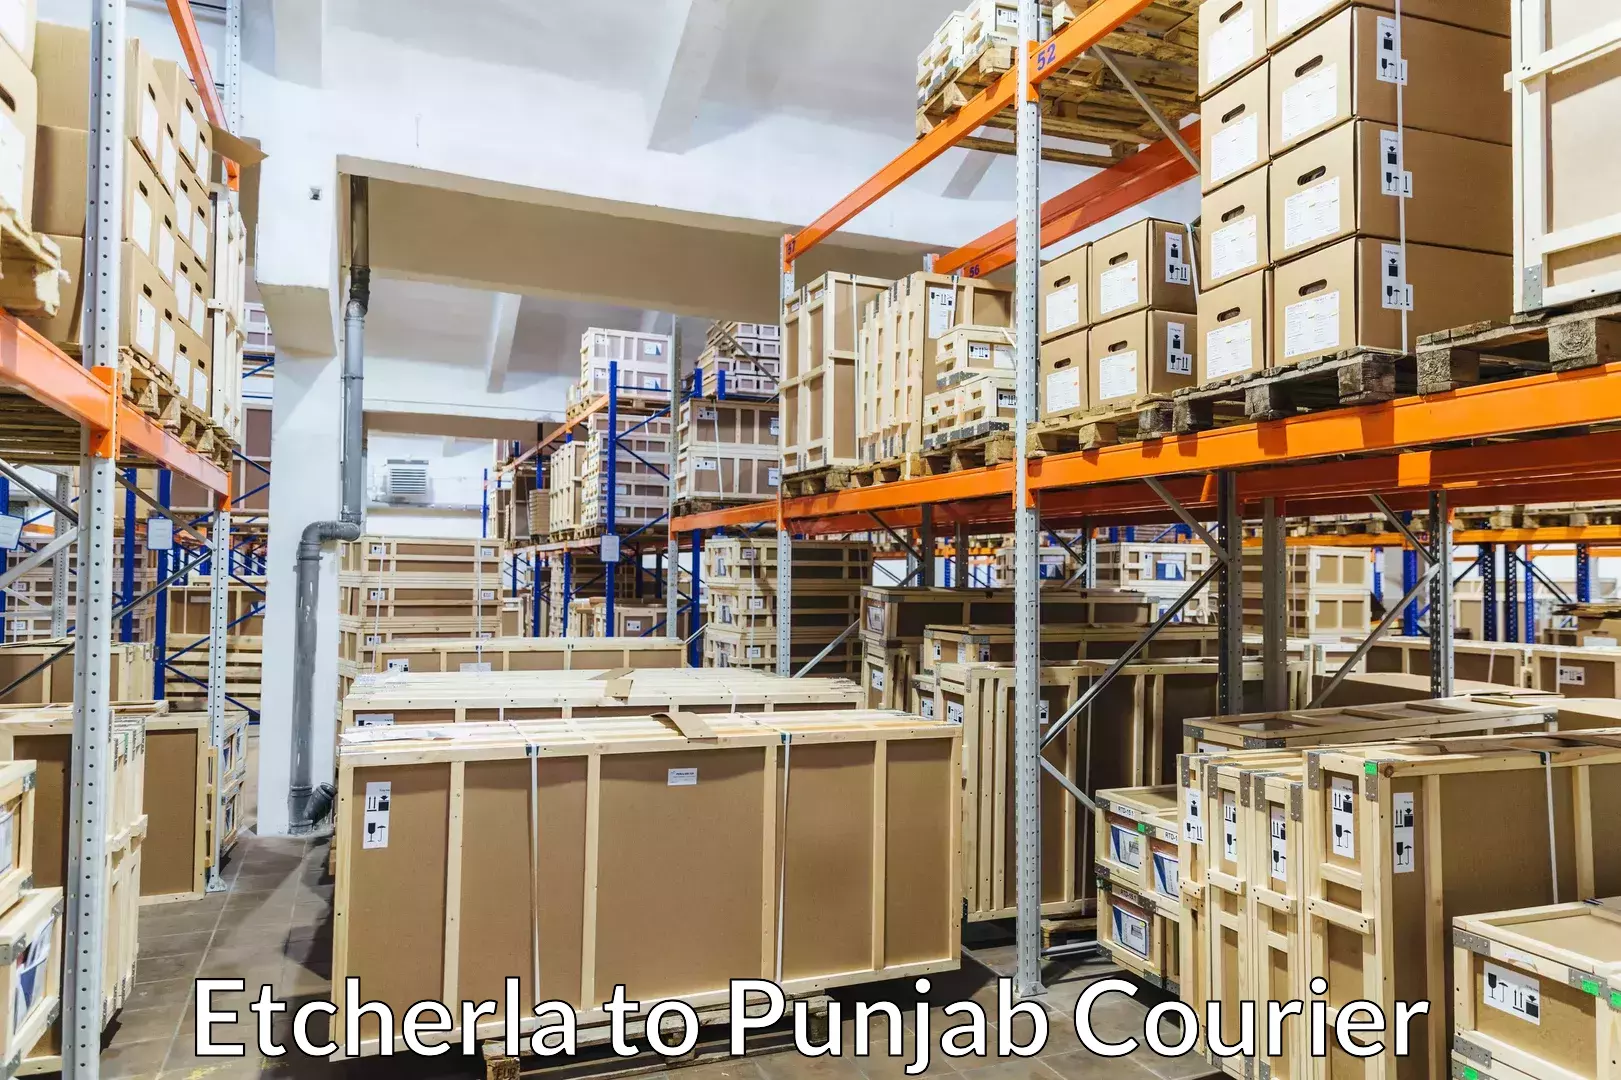 Efficient moving company Etcherla to Central University of Punjab Bathinda